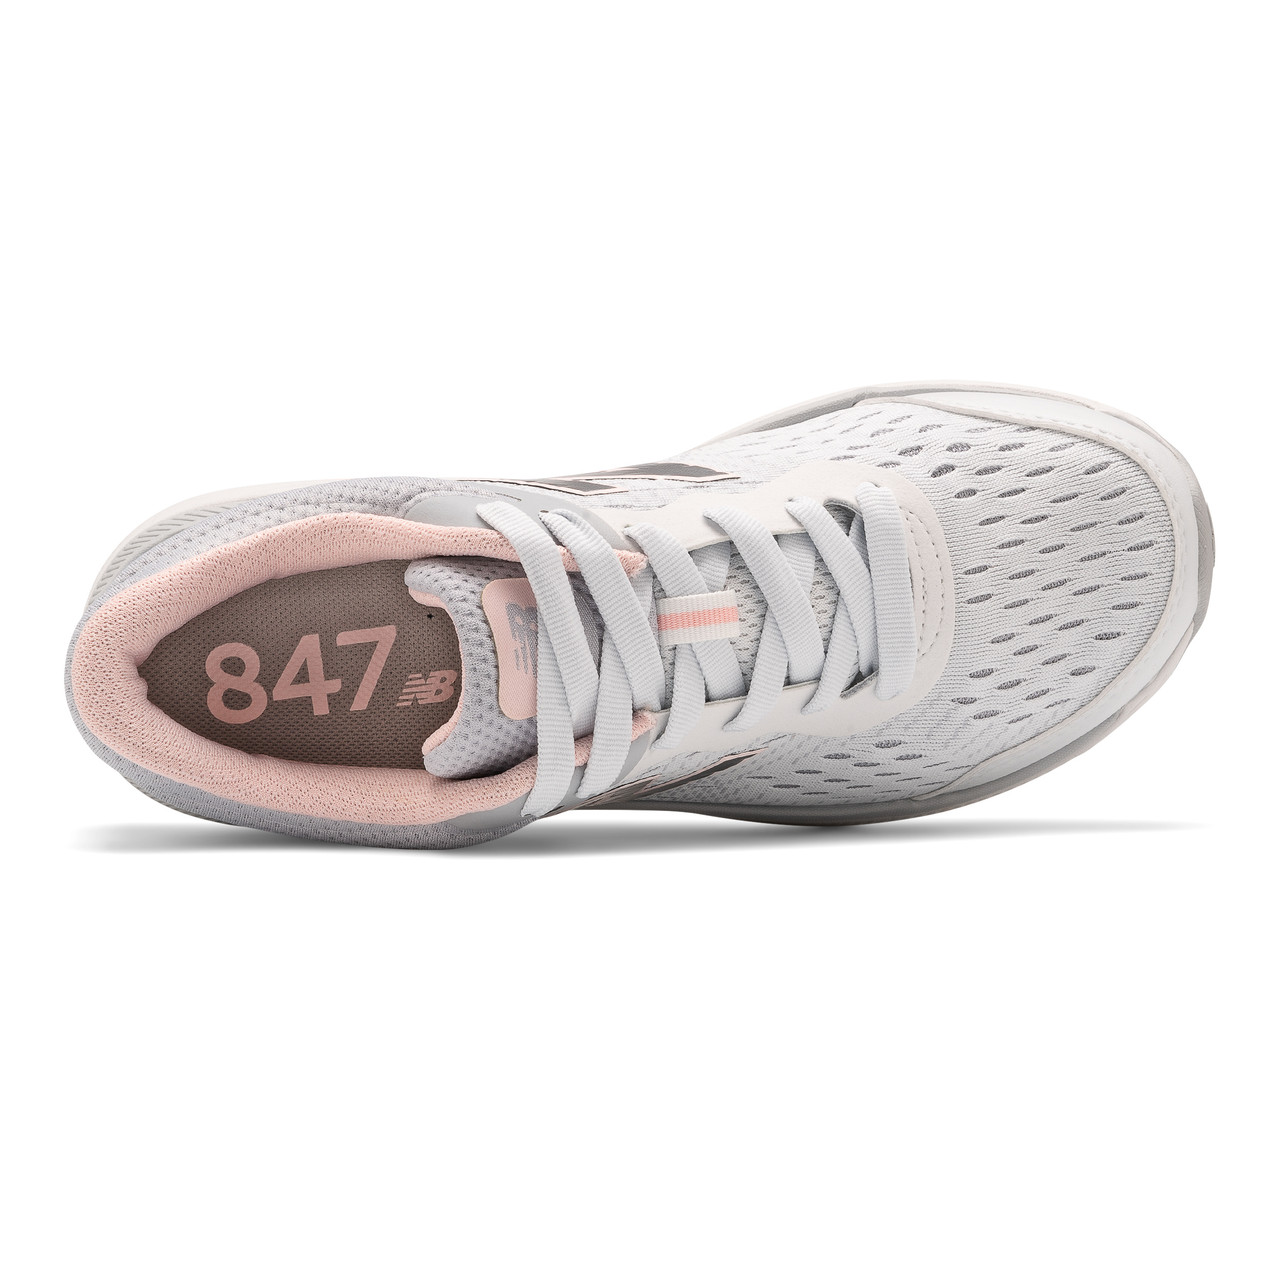 New Balance 847v4 Walking | ShoeStores.com